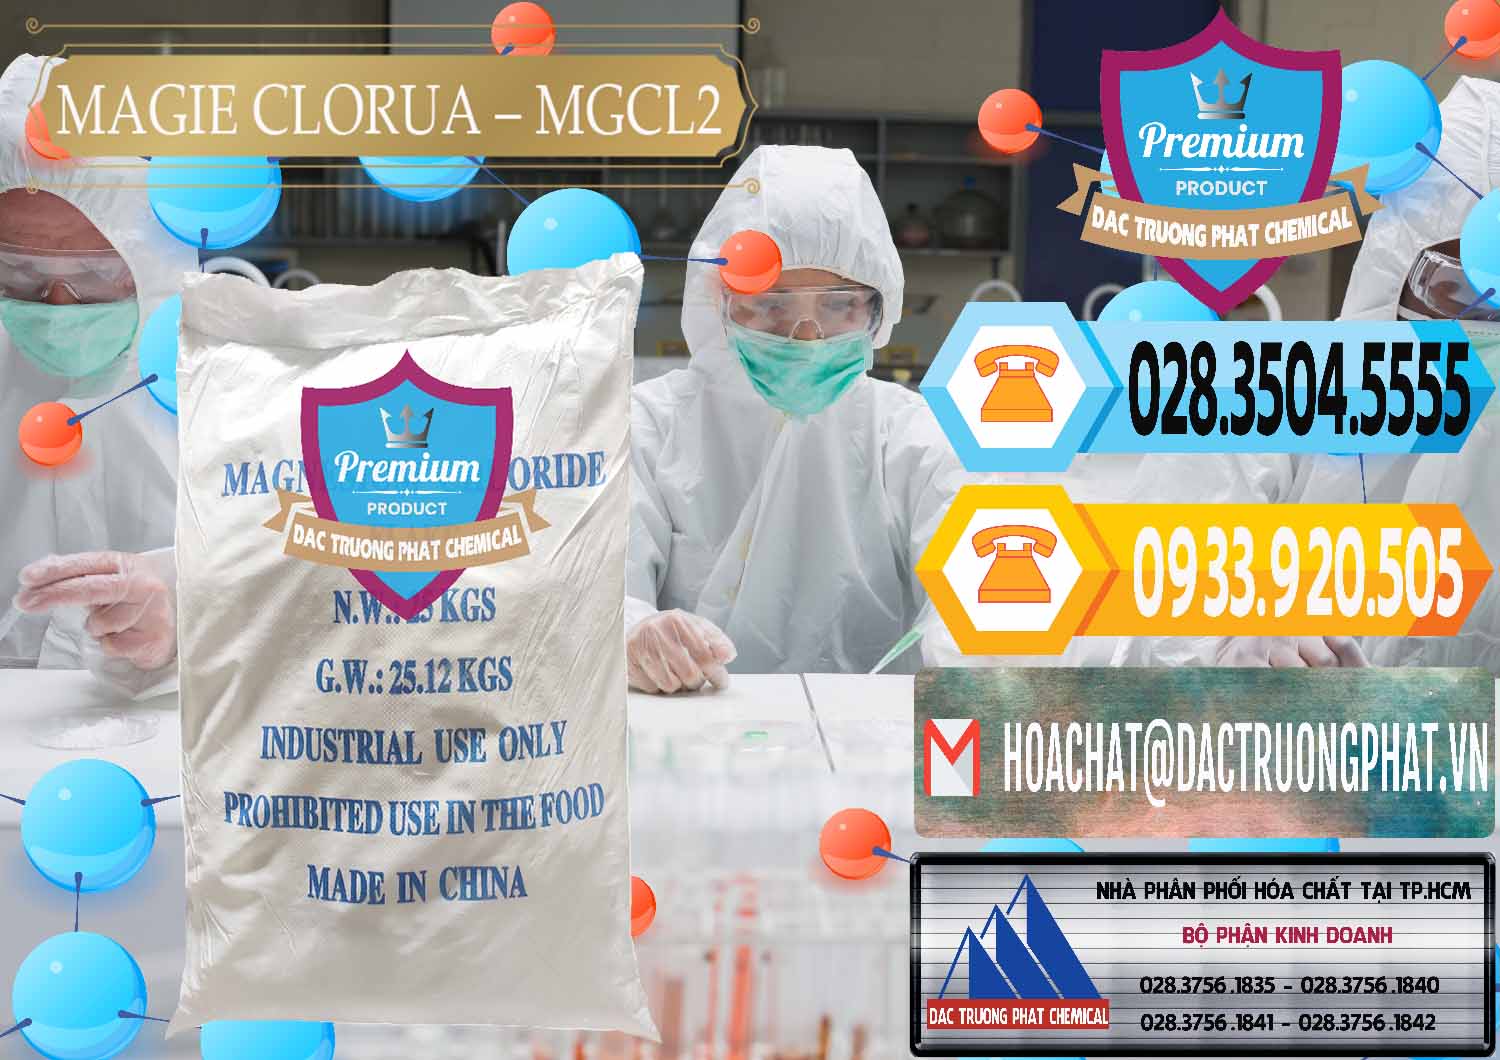 Cty chuyên cung cấp _ bán Magie Clorua – MGCL2 96% Dạng Vảy Trung Quốc China - 0091 - Công ty phân phối - bán hóa chất tại TP.HCM - hoachattayrua.net